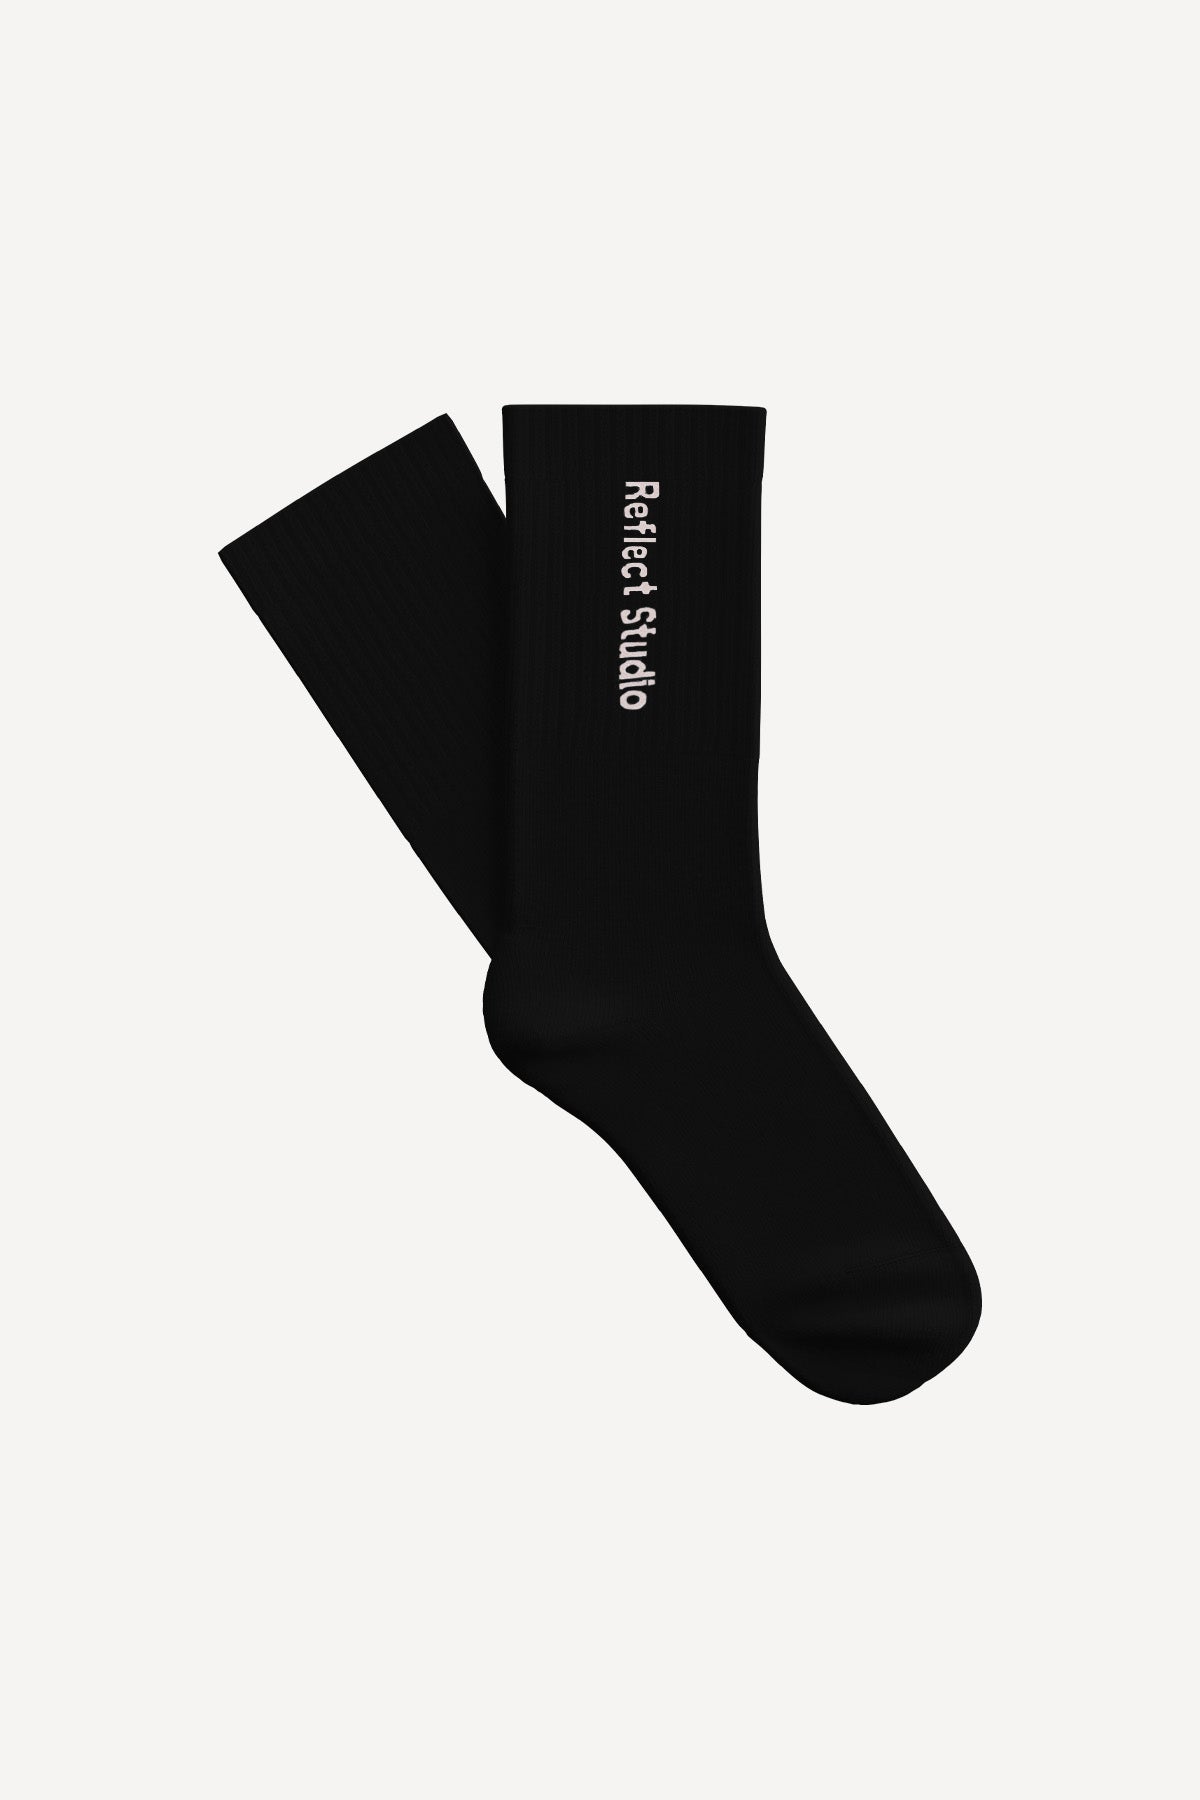 Logo Socks - Black